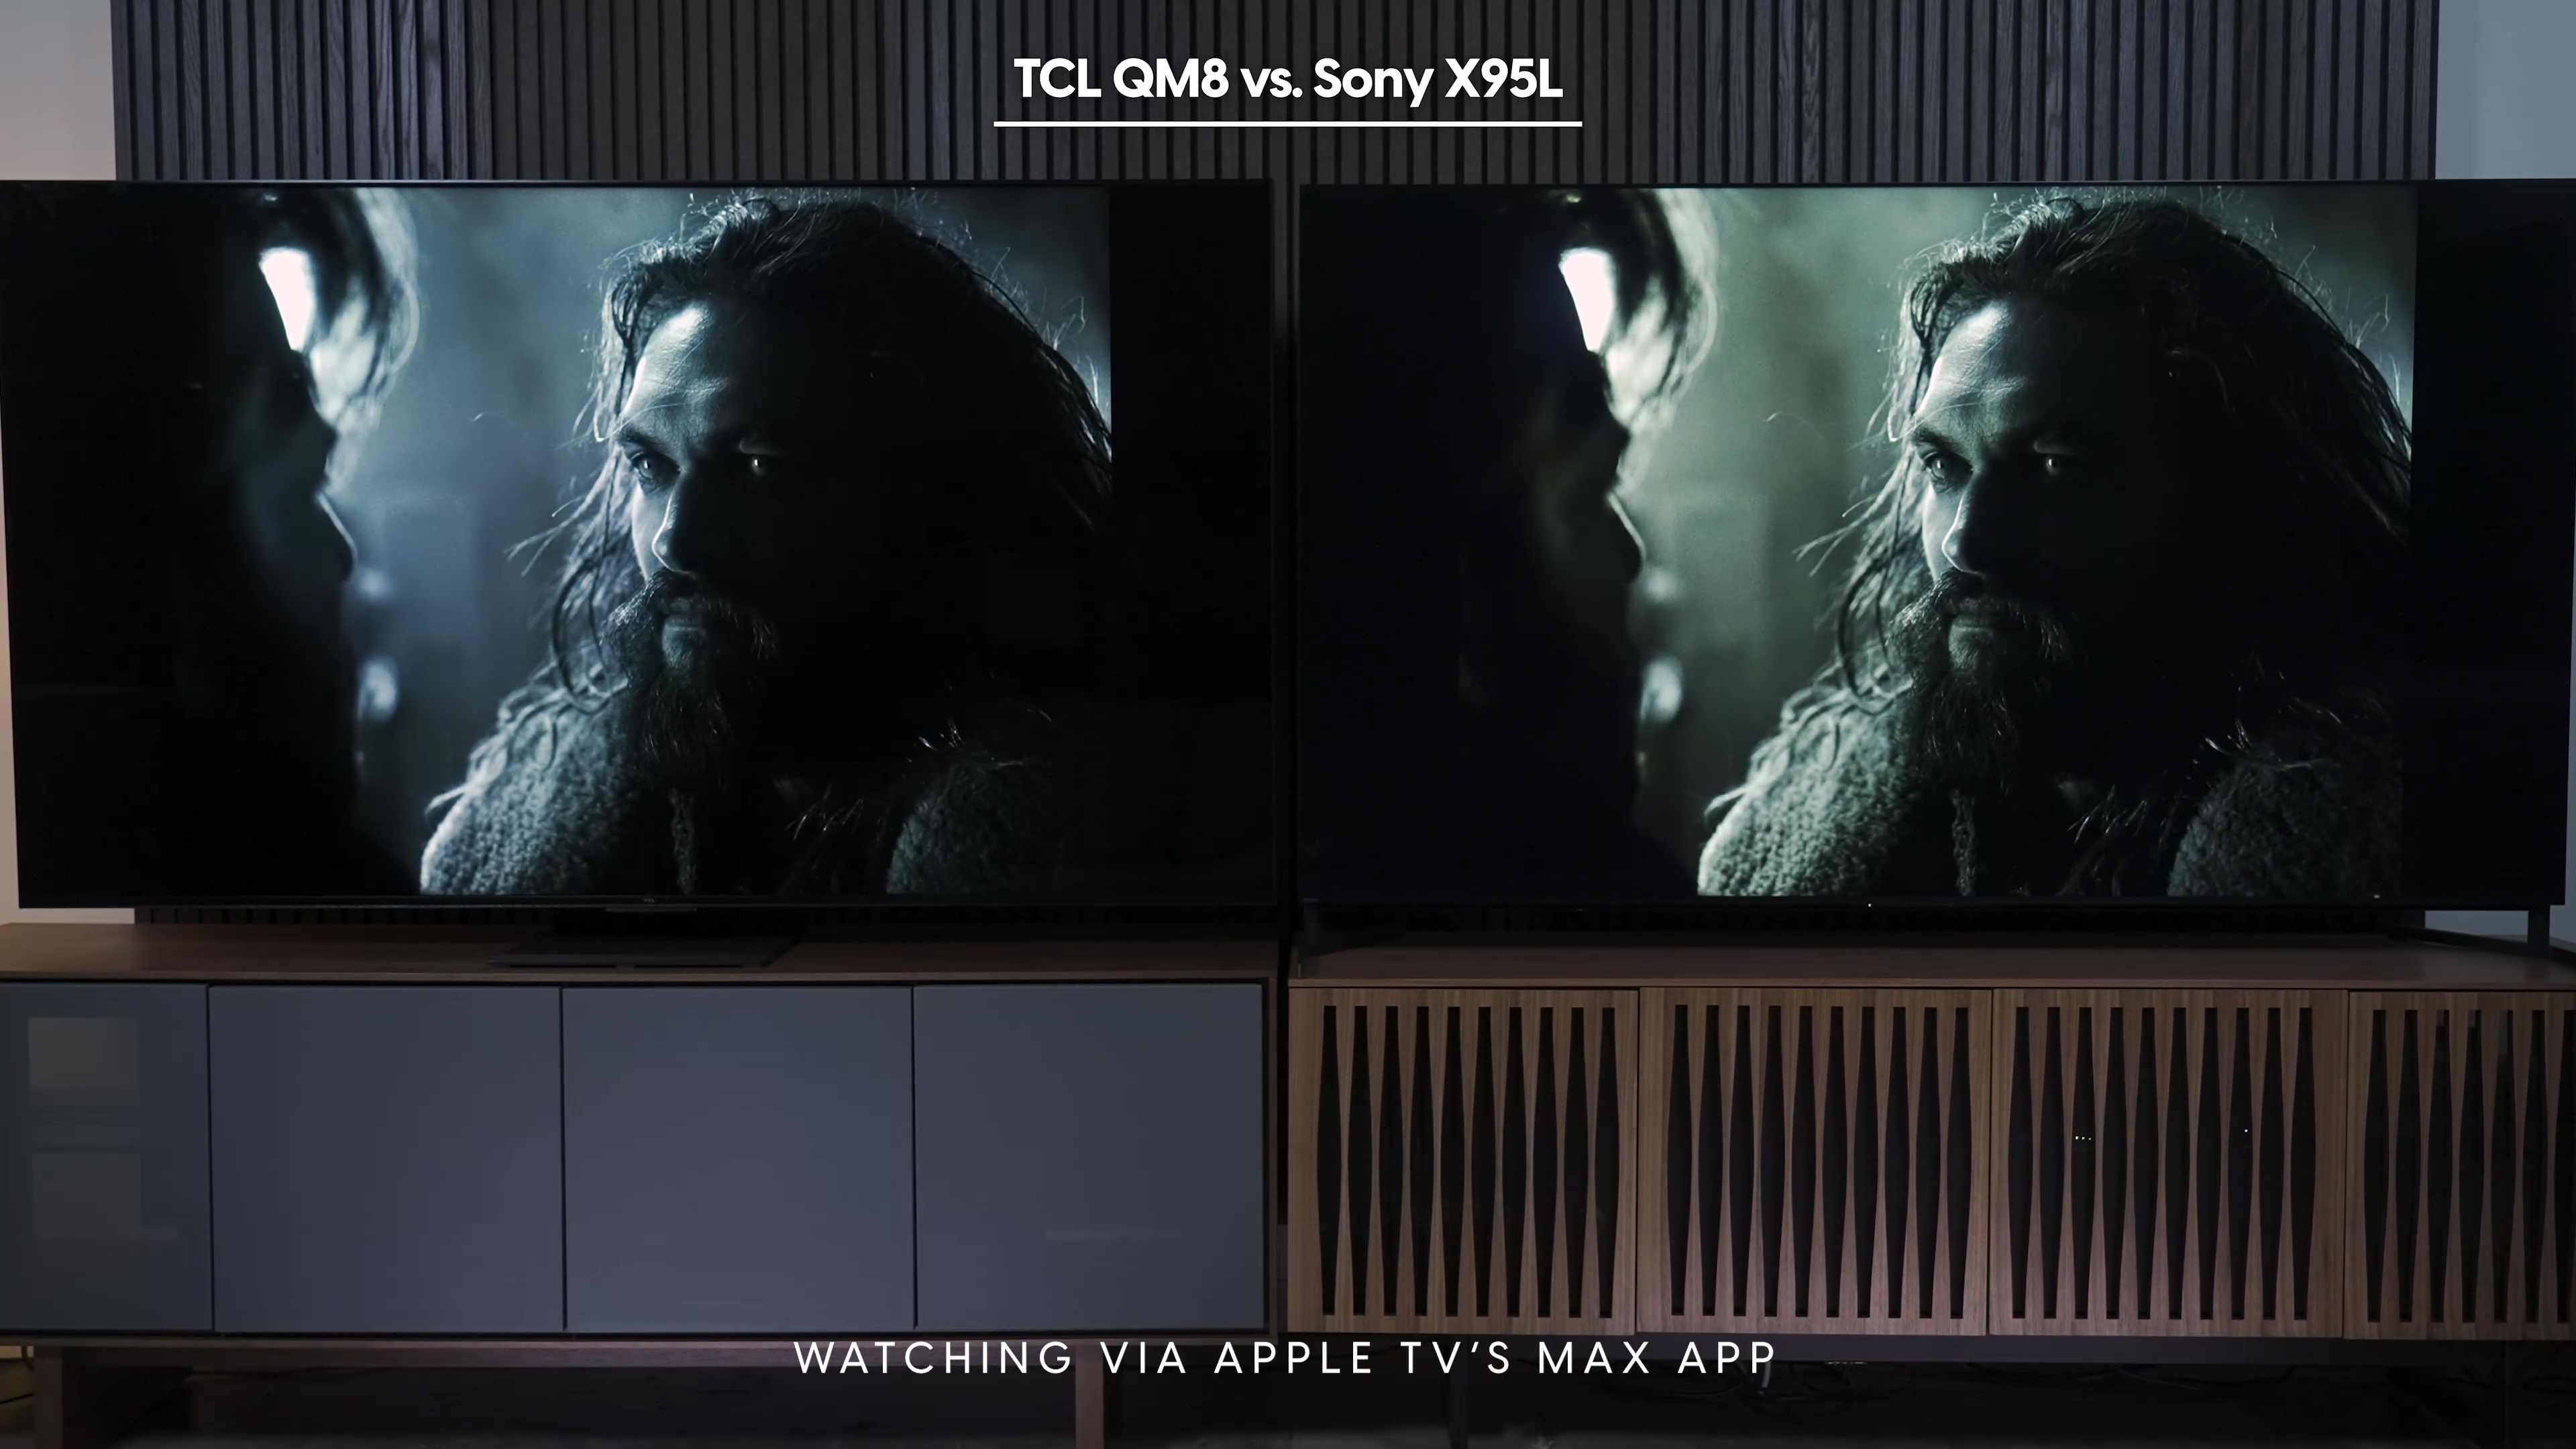 Comparación lado a lado de una captura de pantalla de Justice League como se ve en la aplicación AppleTV Max en Sony Bravia X95L vs TCL QM8.